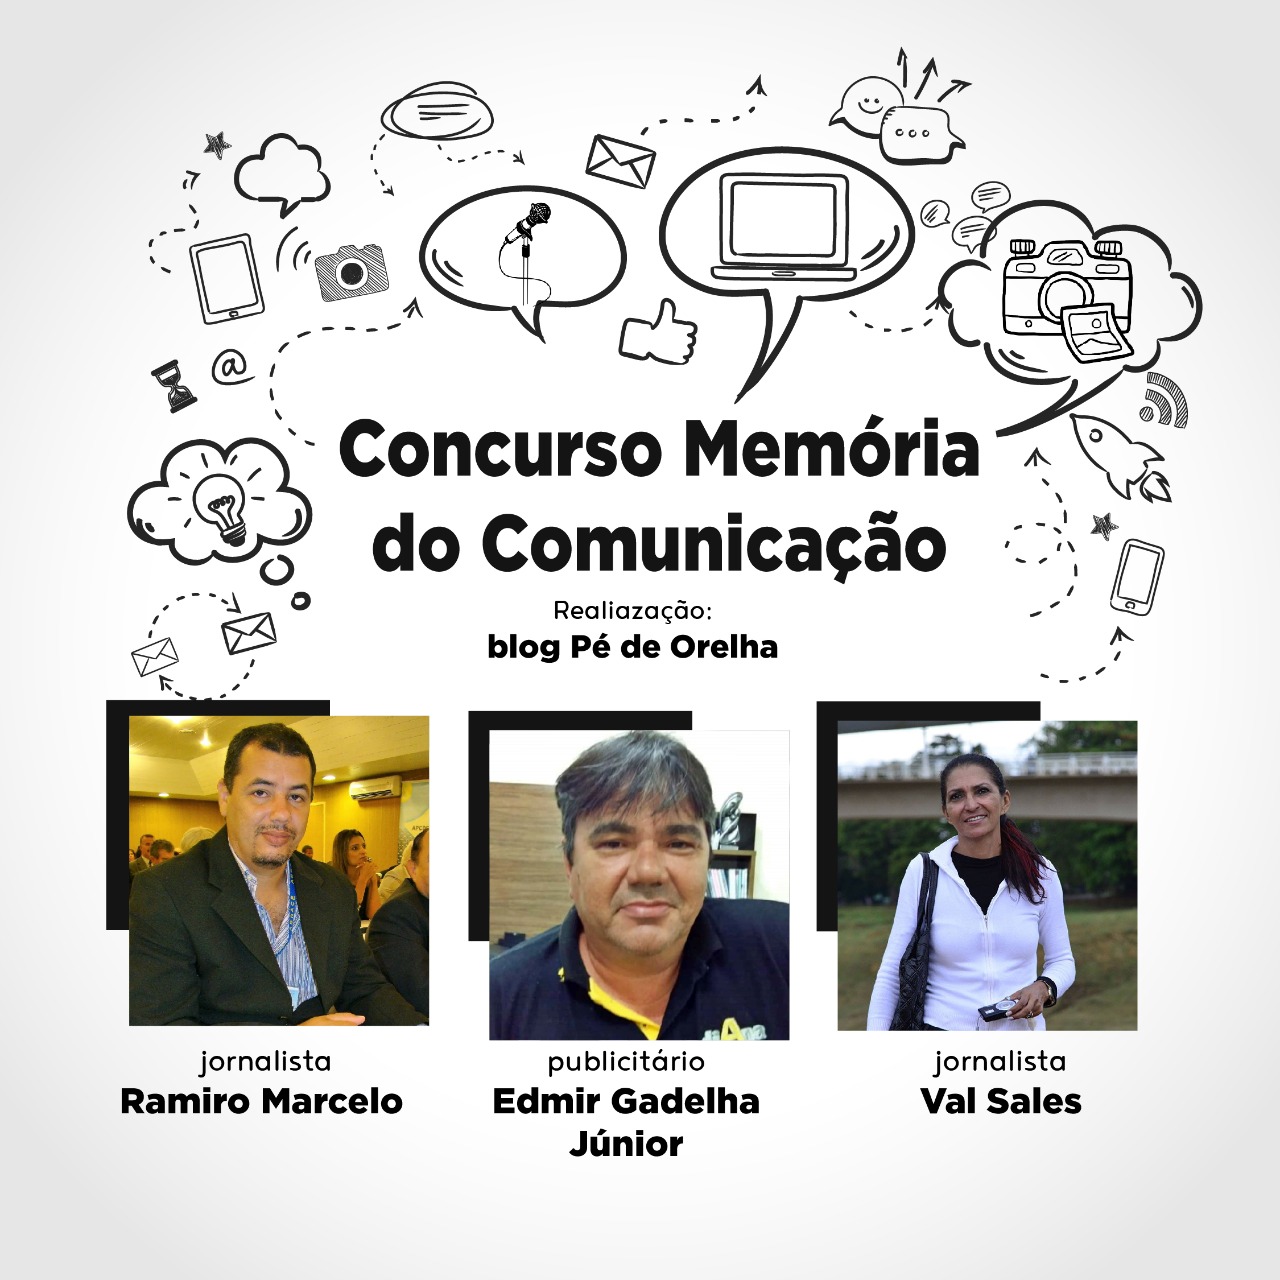 Blog Pé de Orelha realiza Concurso Memória Viva da Comunicação